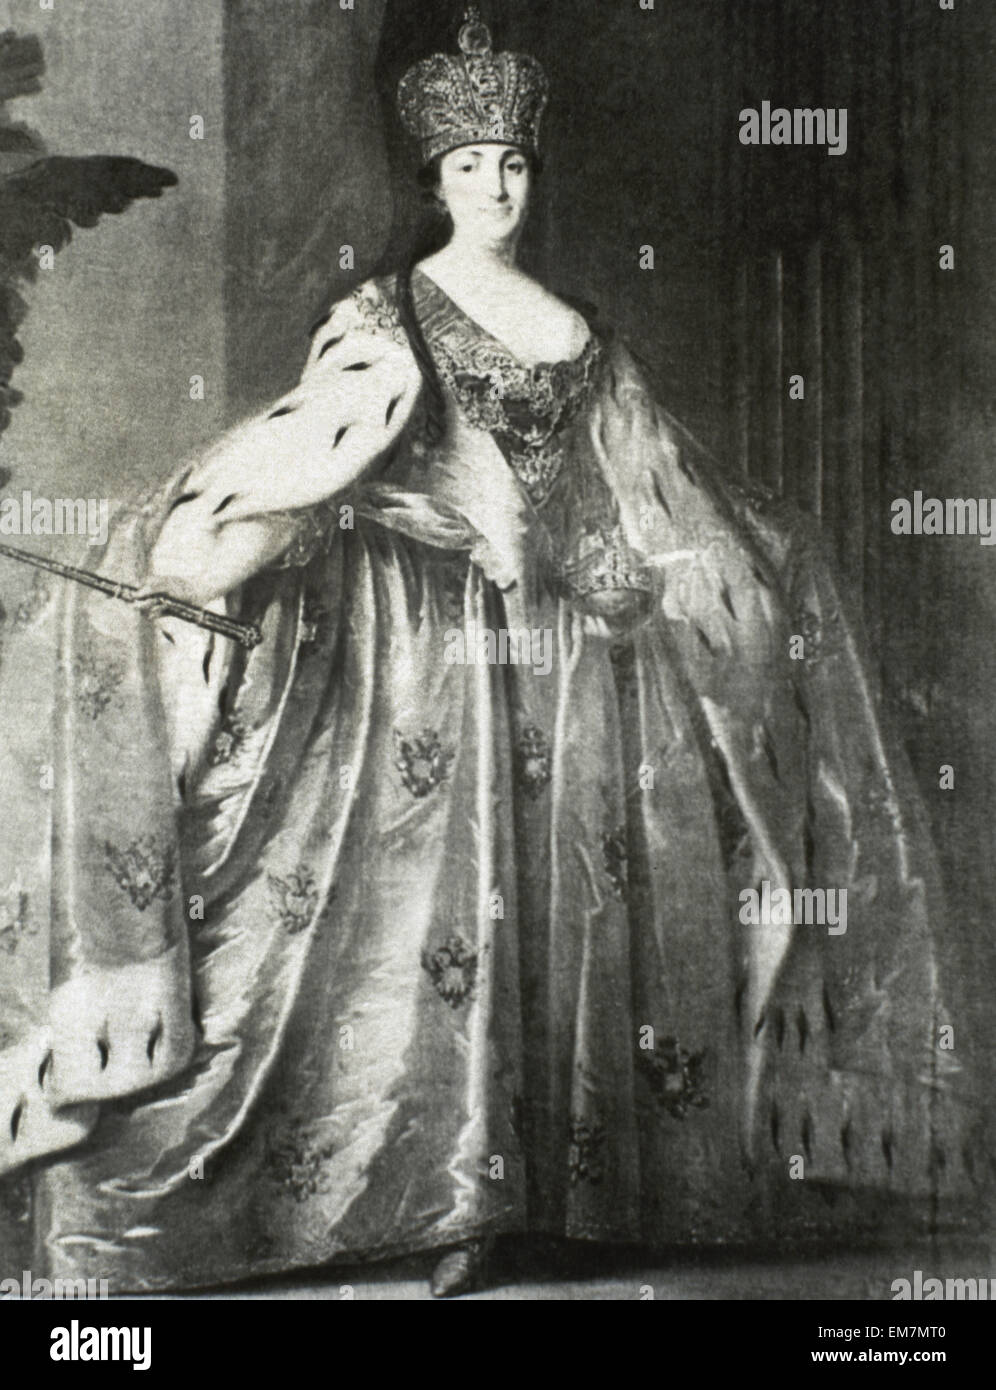 Katharina die große (1729-1796). Kaiserin und Autocat aller Reußen. Porträt. Gravur. Kopie eines Vintage Porträt. Stockfoto